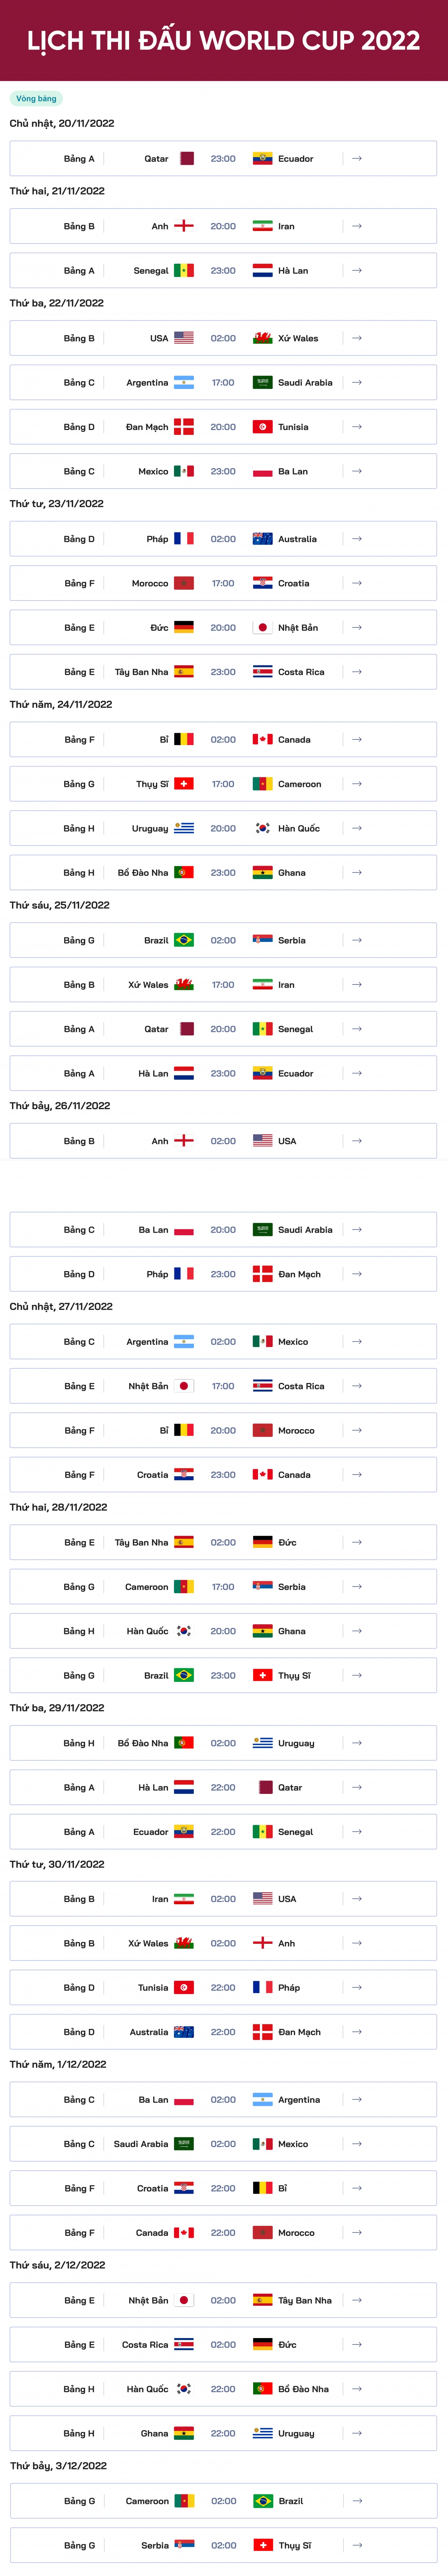 Lịch thi đấu và trực tiếp VCK World Cup 2022